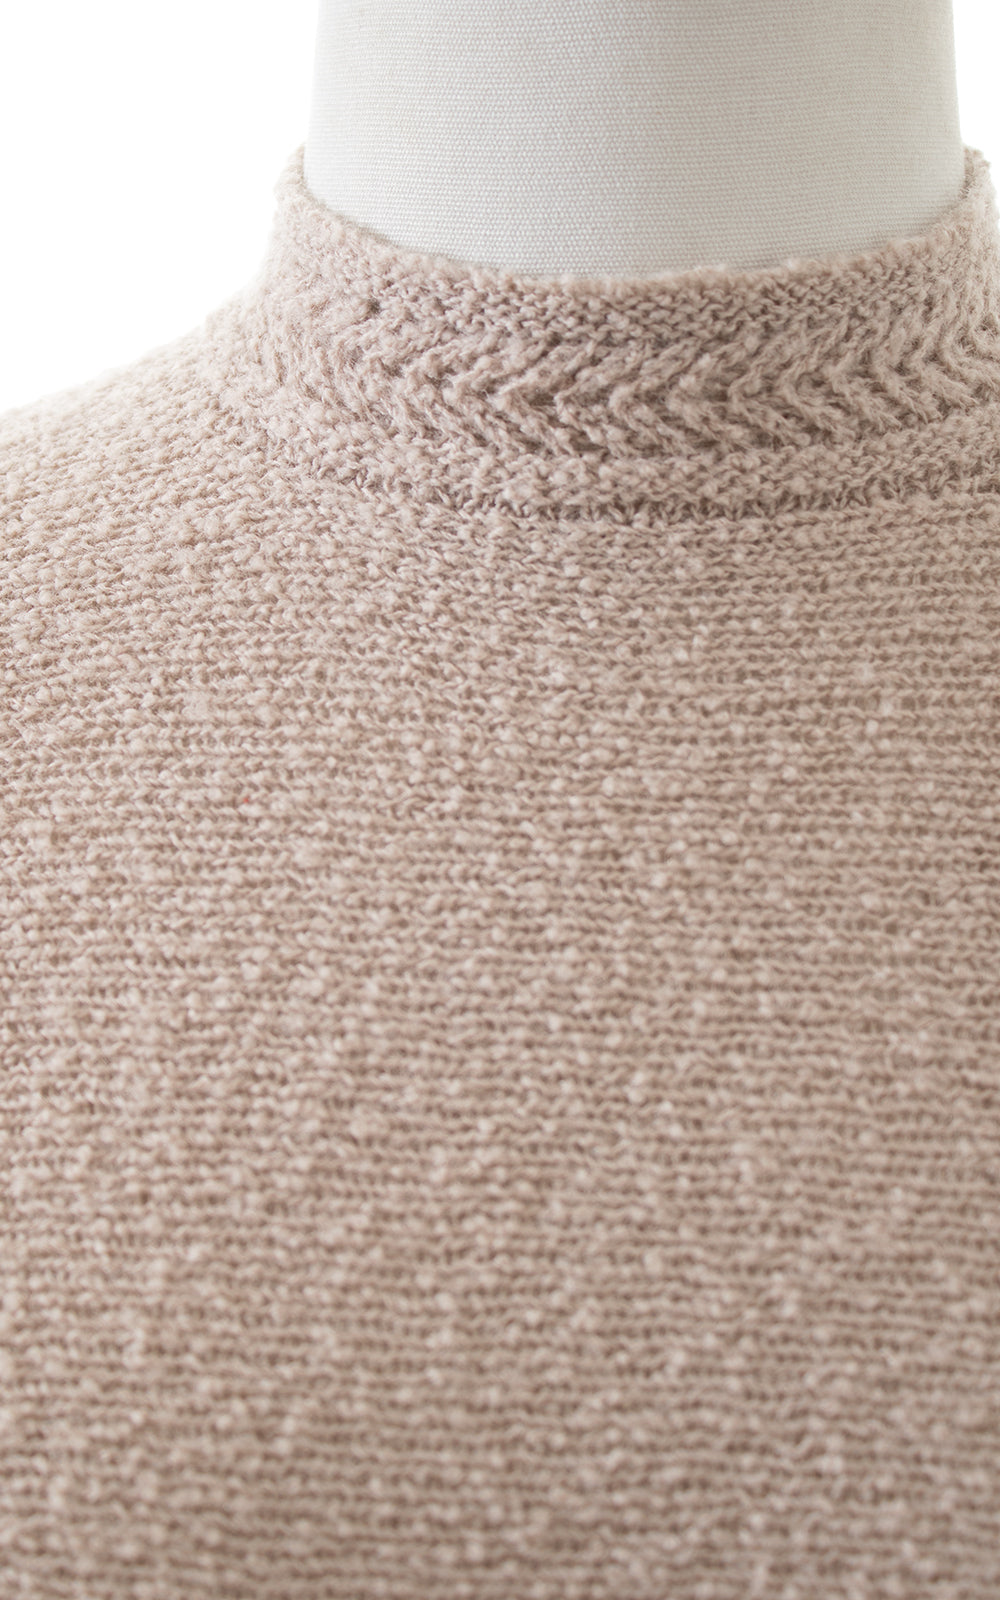 1940s 1950s LASS O' SCOTLAND Knit Wool Sweater Dress